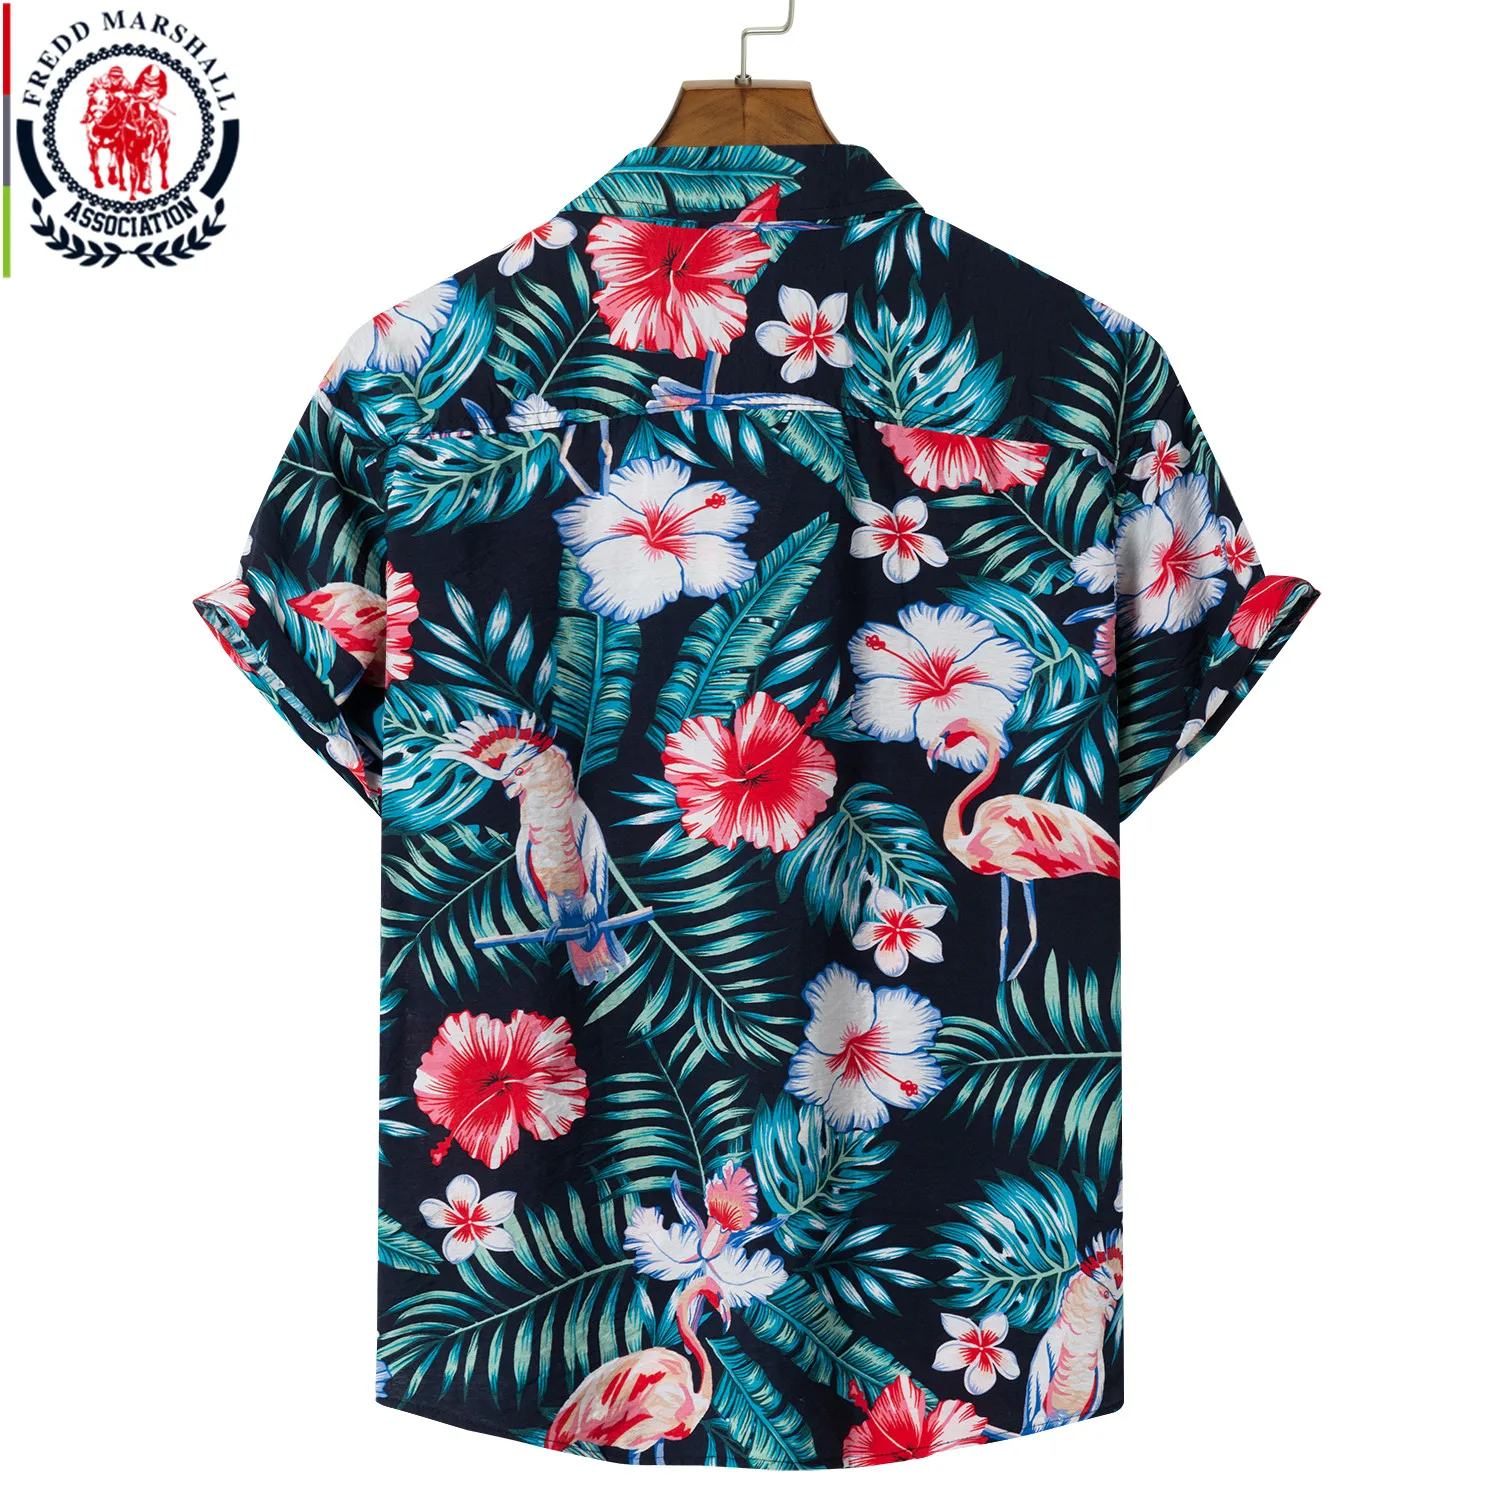 FREDD MARSHALL 2021 новая модная рубашка с тропическим принтом летняя гавайская коротким